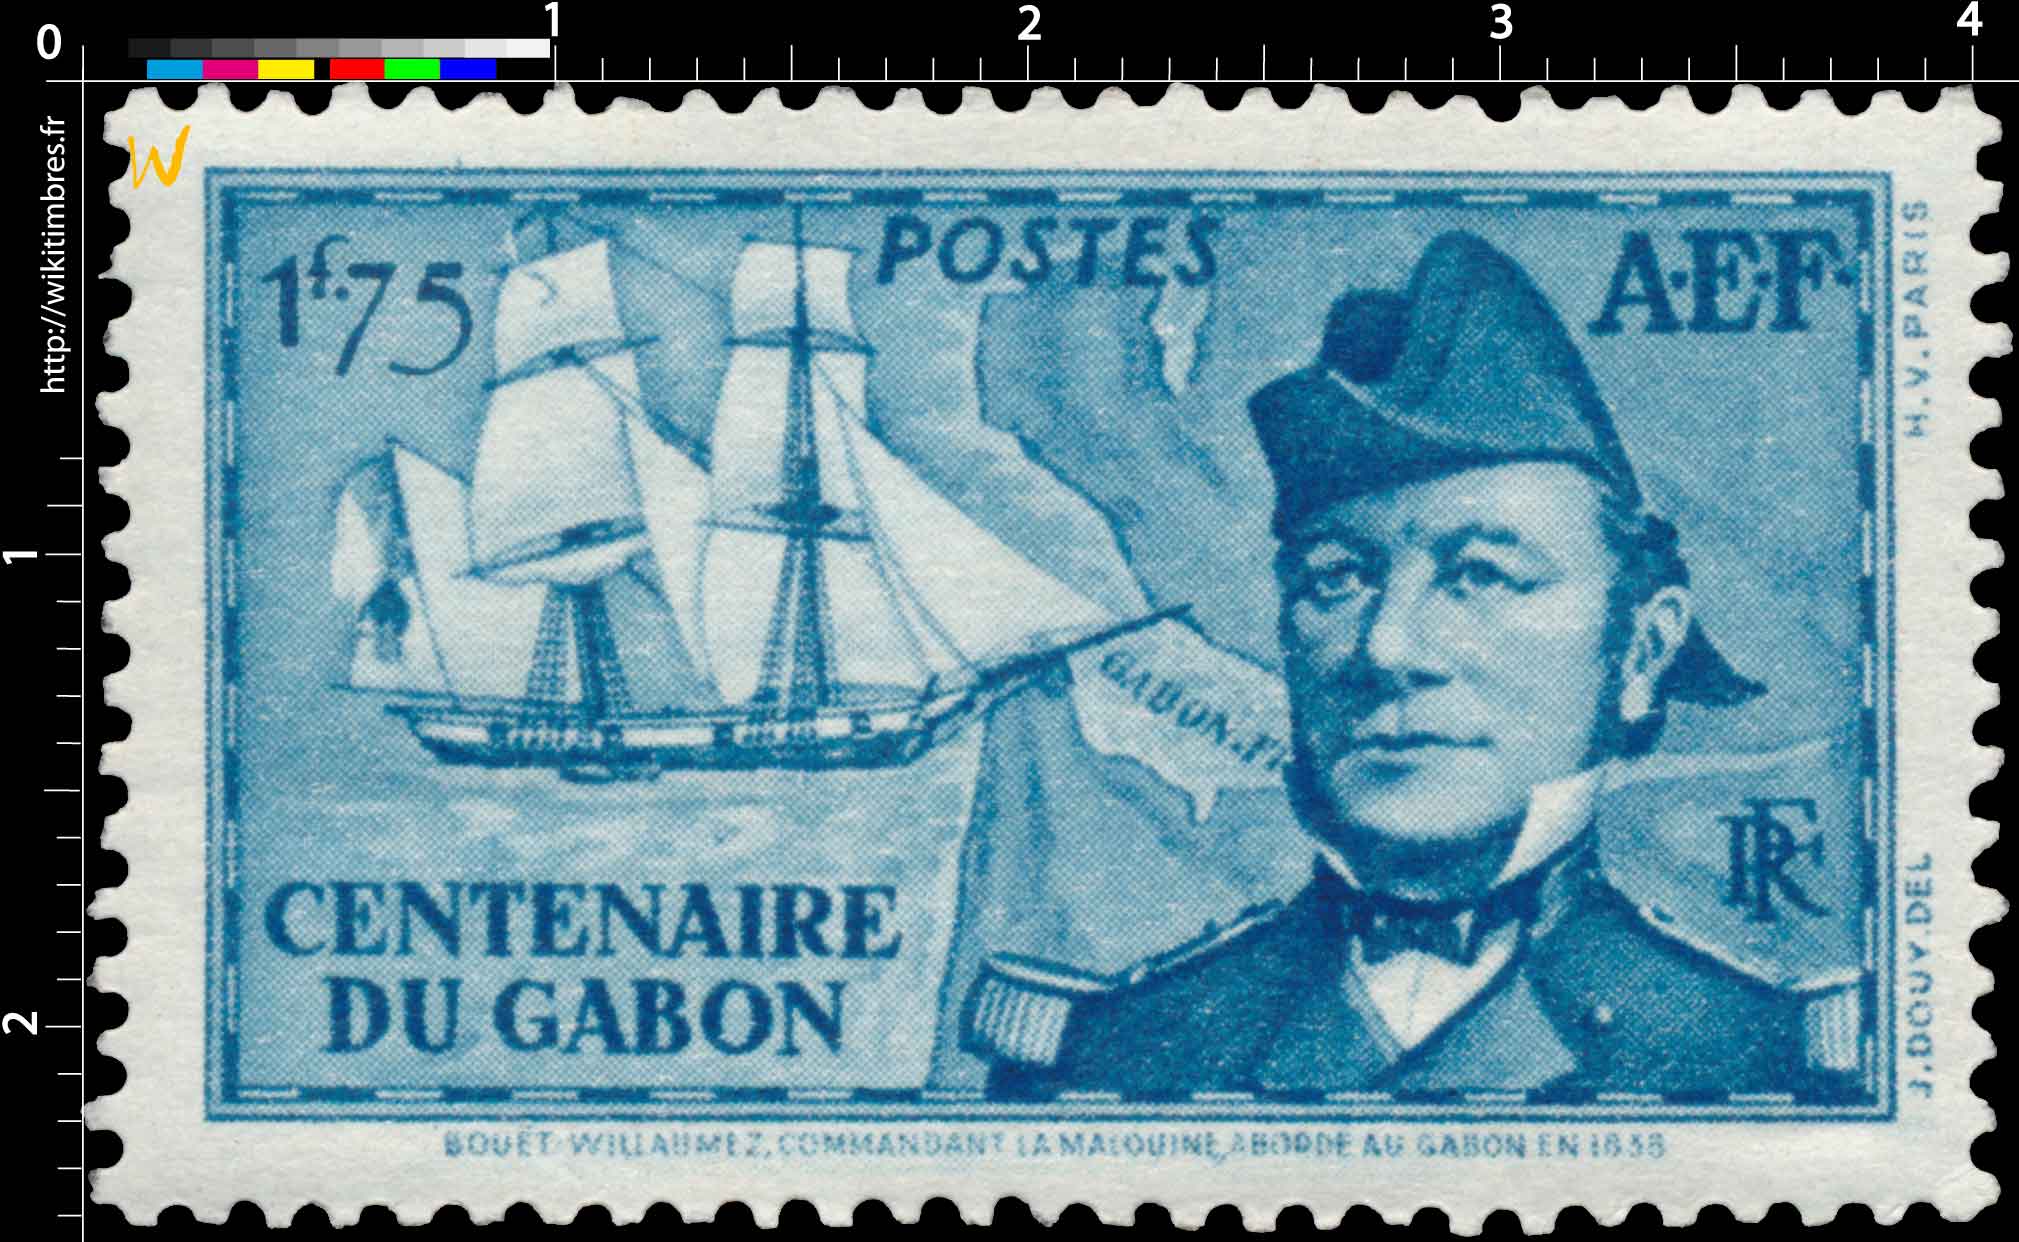 Centenaire du Gabon Bouet-Willaumez commandant la Malouine aborde au Gabon en 1838